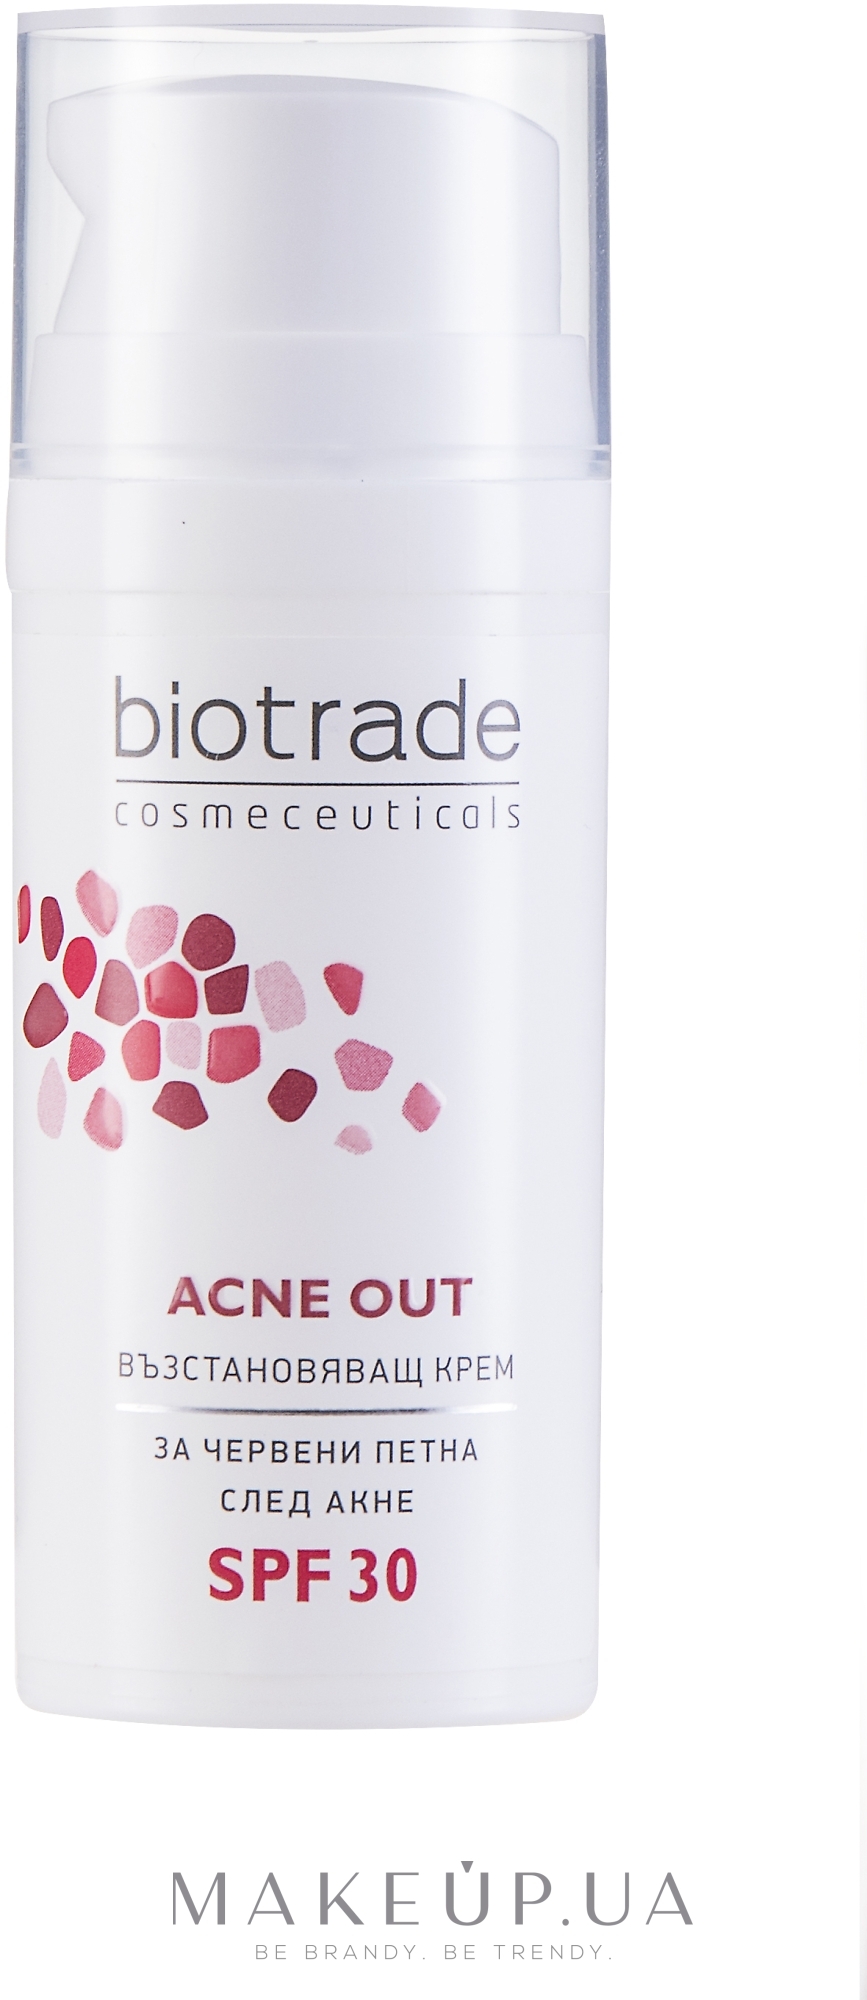 Відновлювальний крем з SPF 30 для шкіри з постакне - Biotrade ACNE OUT SPF 30 — фото 30g